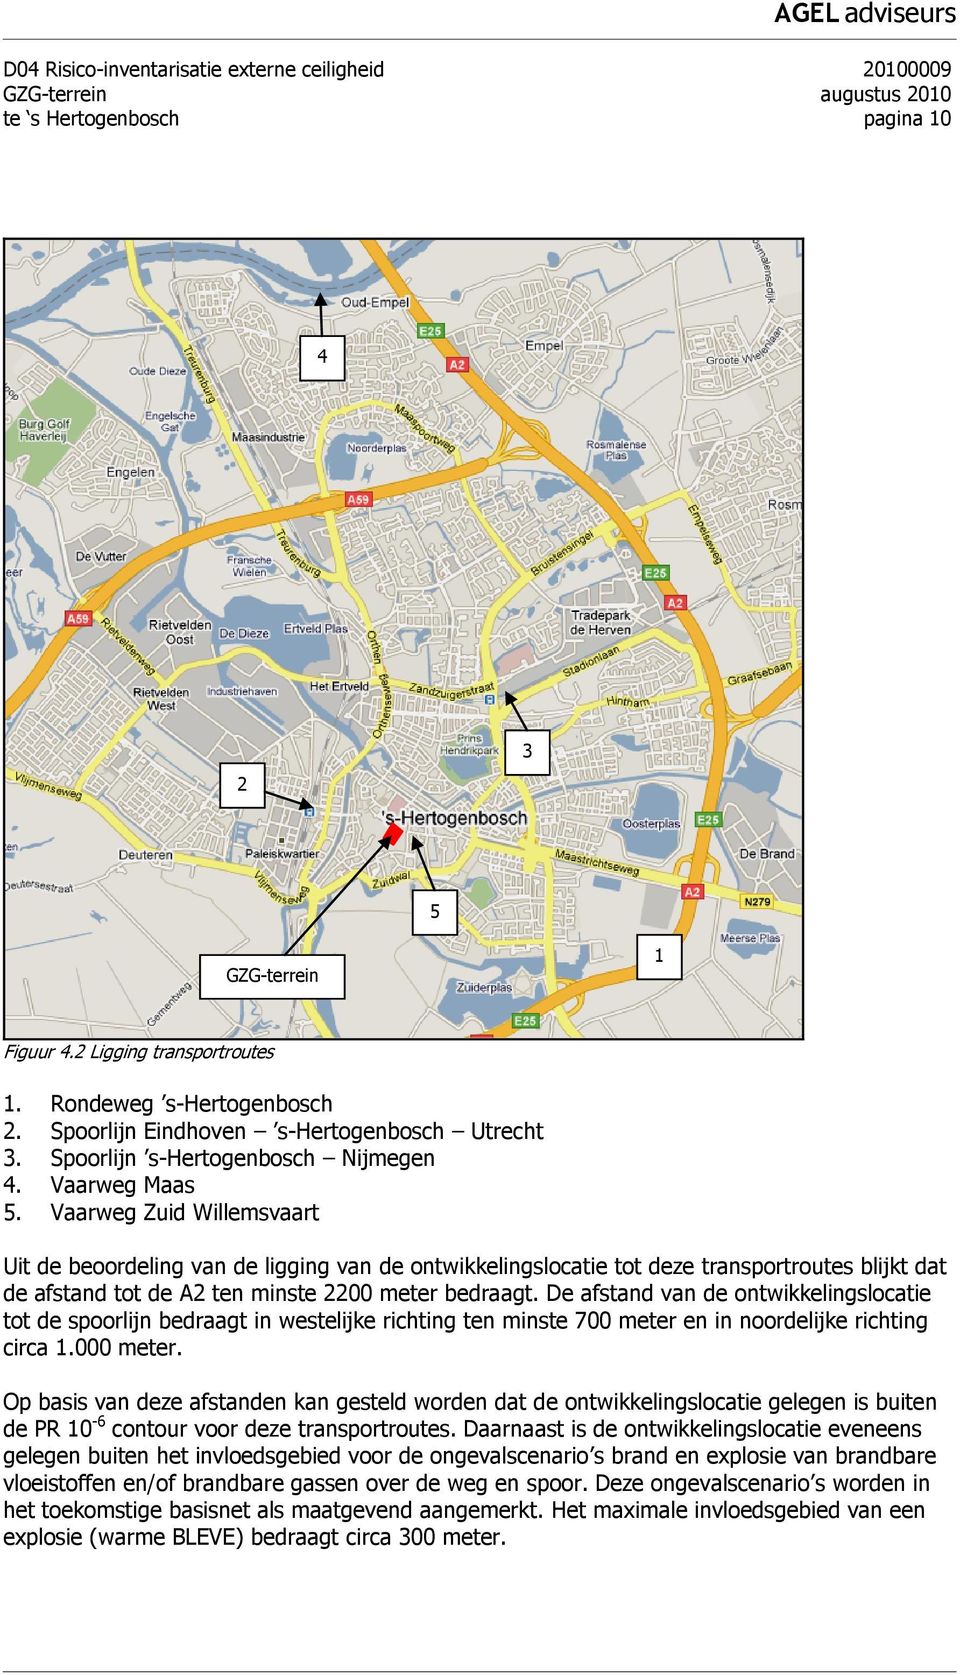 Vaarweg Zuid Willemsvaart Uit de beoordeling van de ligging van de ontwikkelingslocatie tot deze transportroutes blijkt dat de afstand tot de A2 ten minste 2200 meter bedraagt.